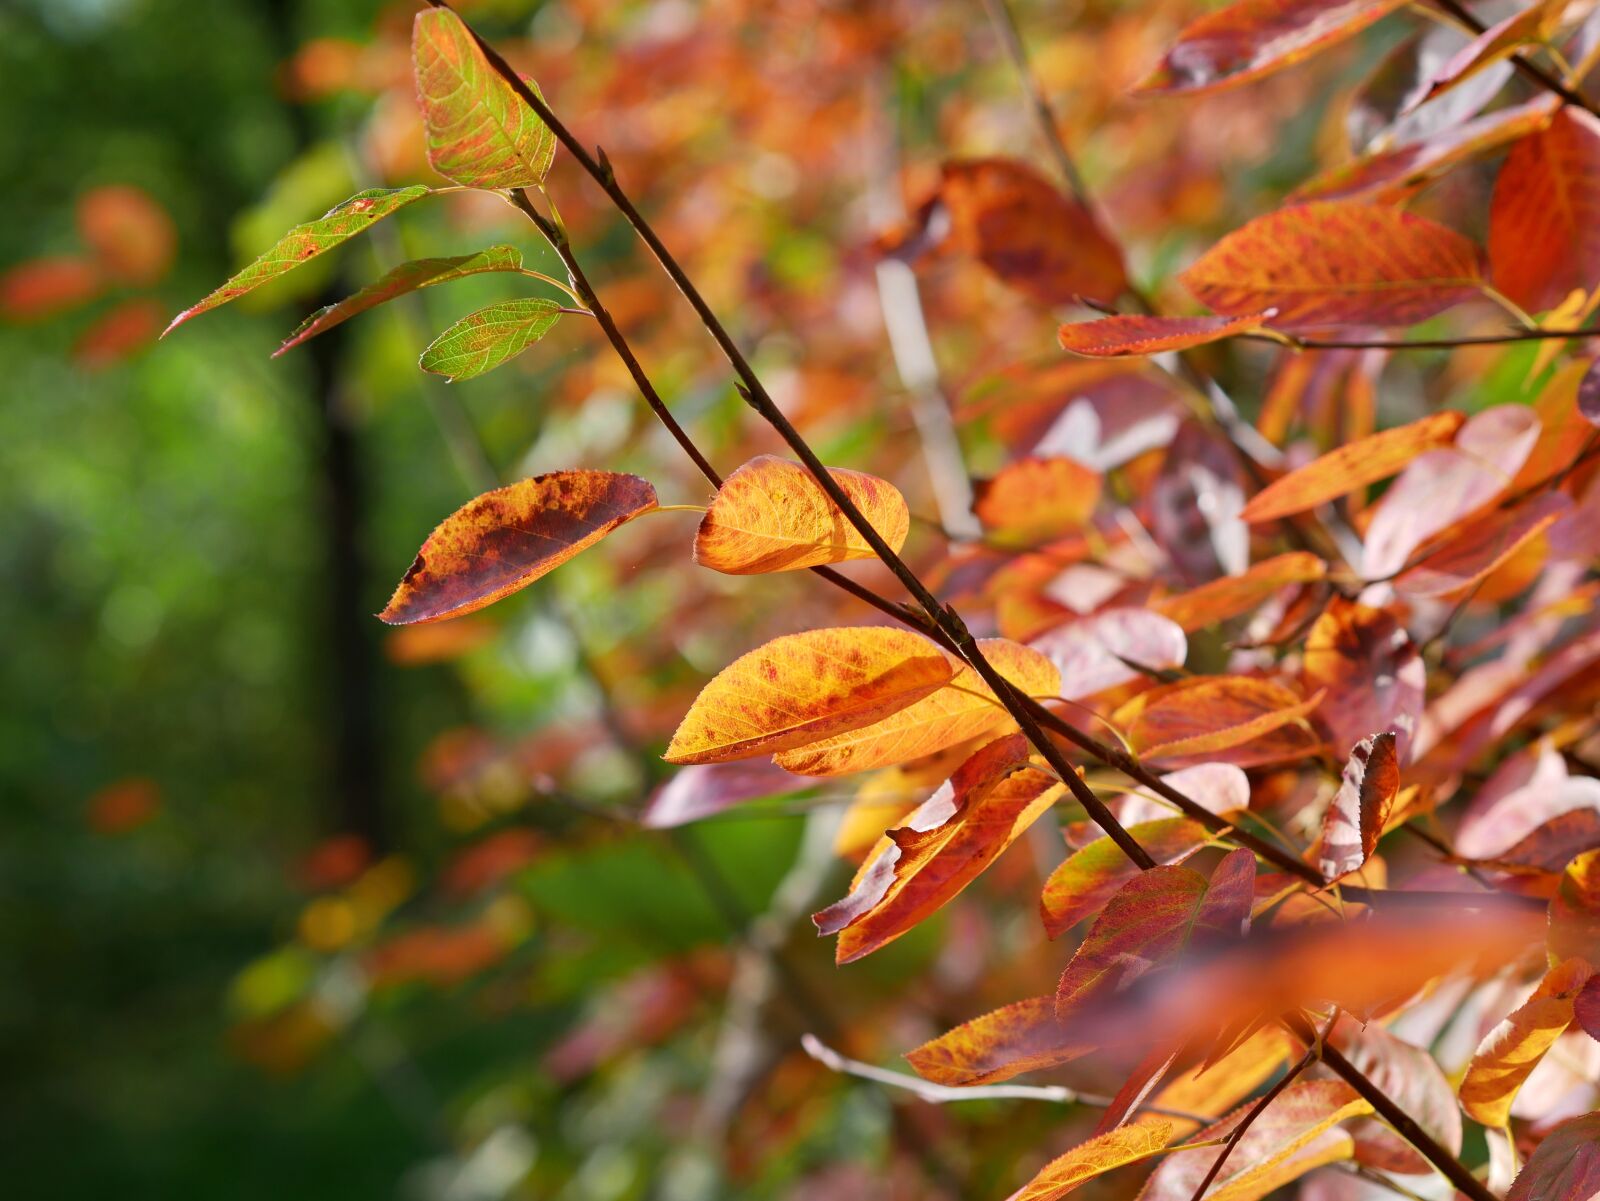 Panasonic Lumix DMC-GX85 (Lumix DMC-GX80 / Lumix DMC-GX7 Mark II) sample photo. Leaves, autumn, fall foliage photography